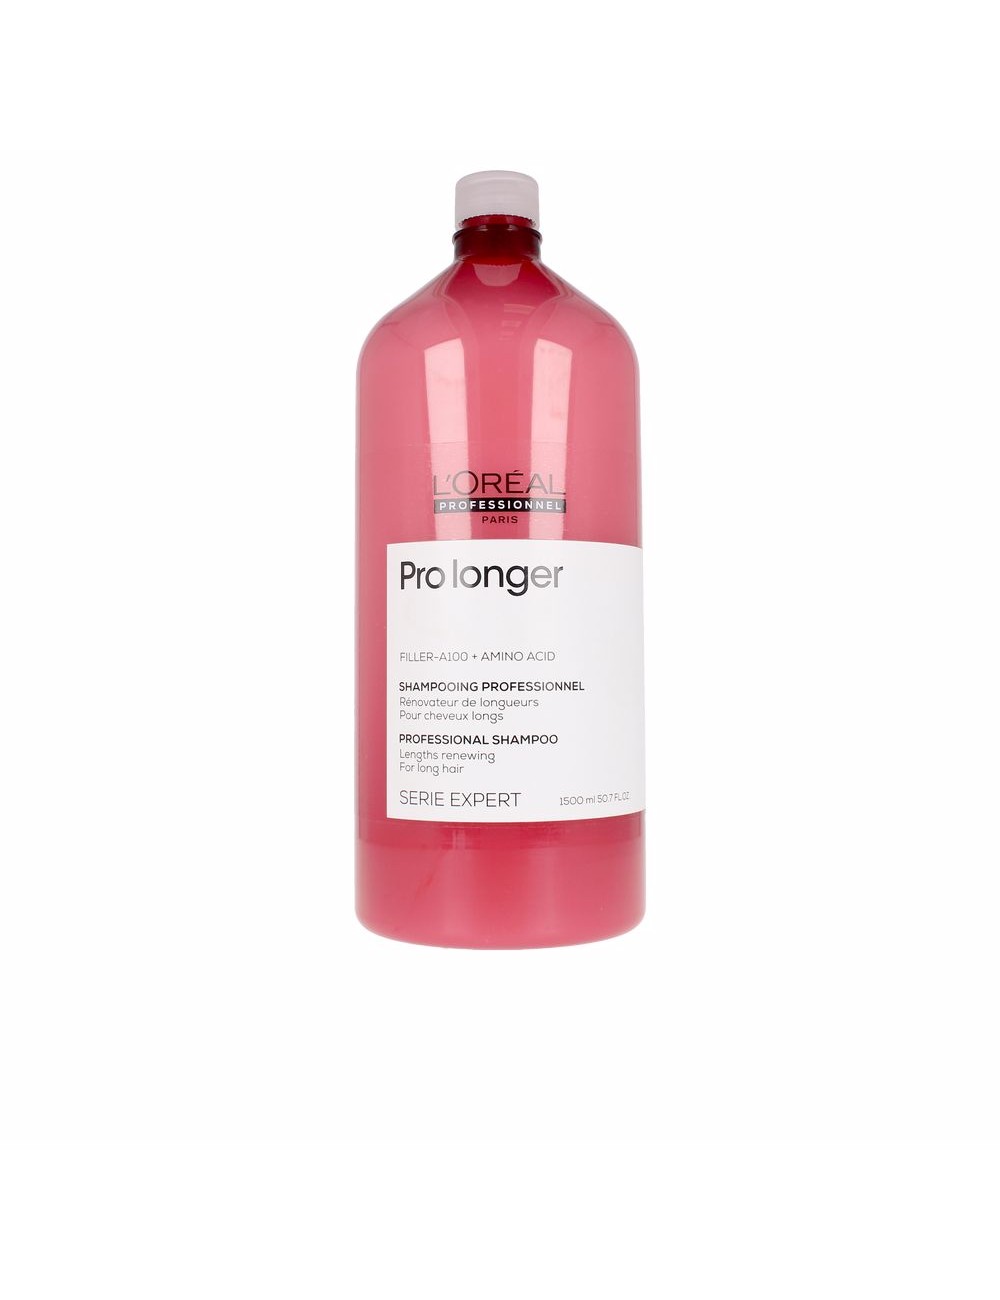 PRO LONGER shampoo